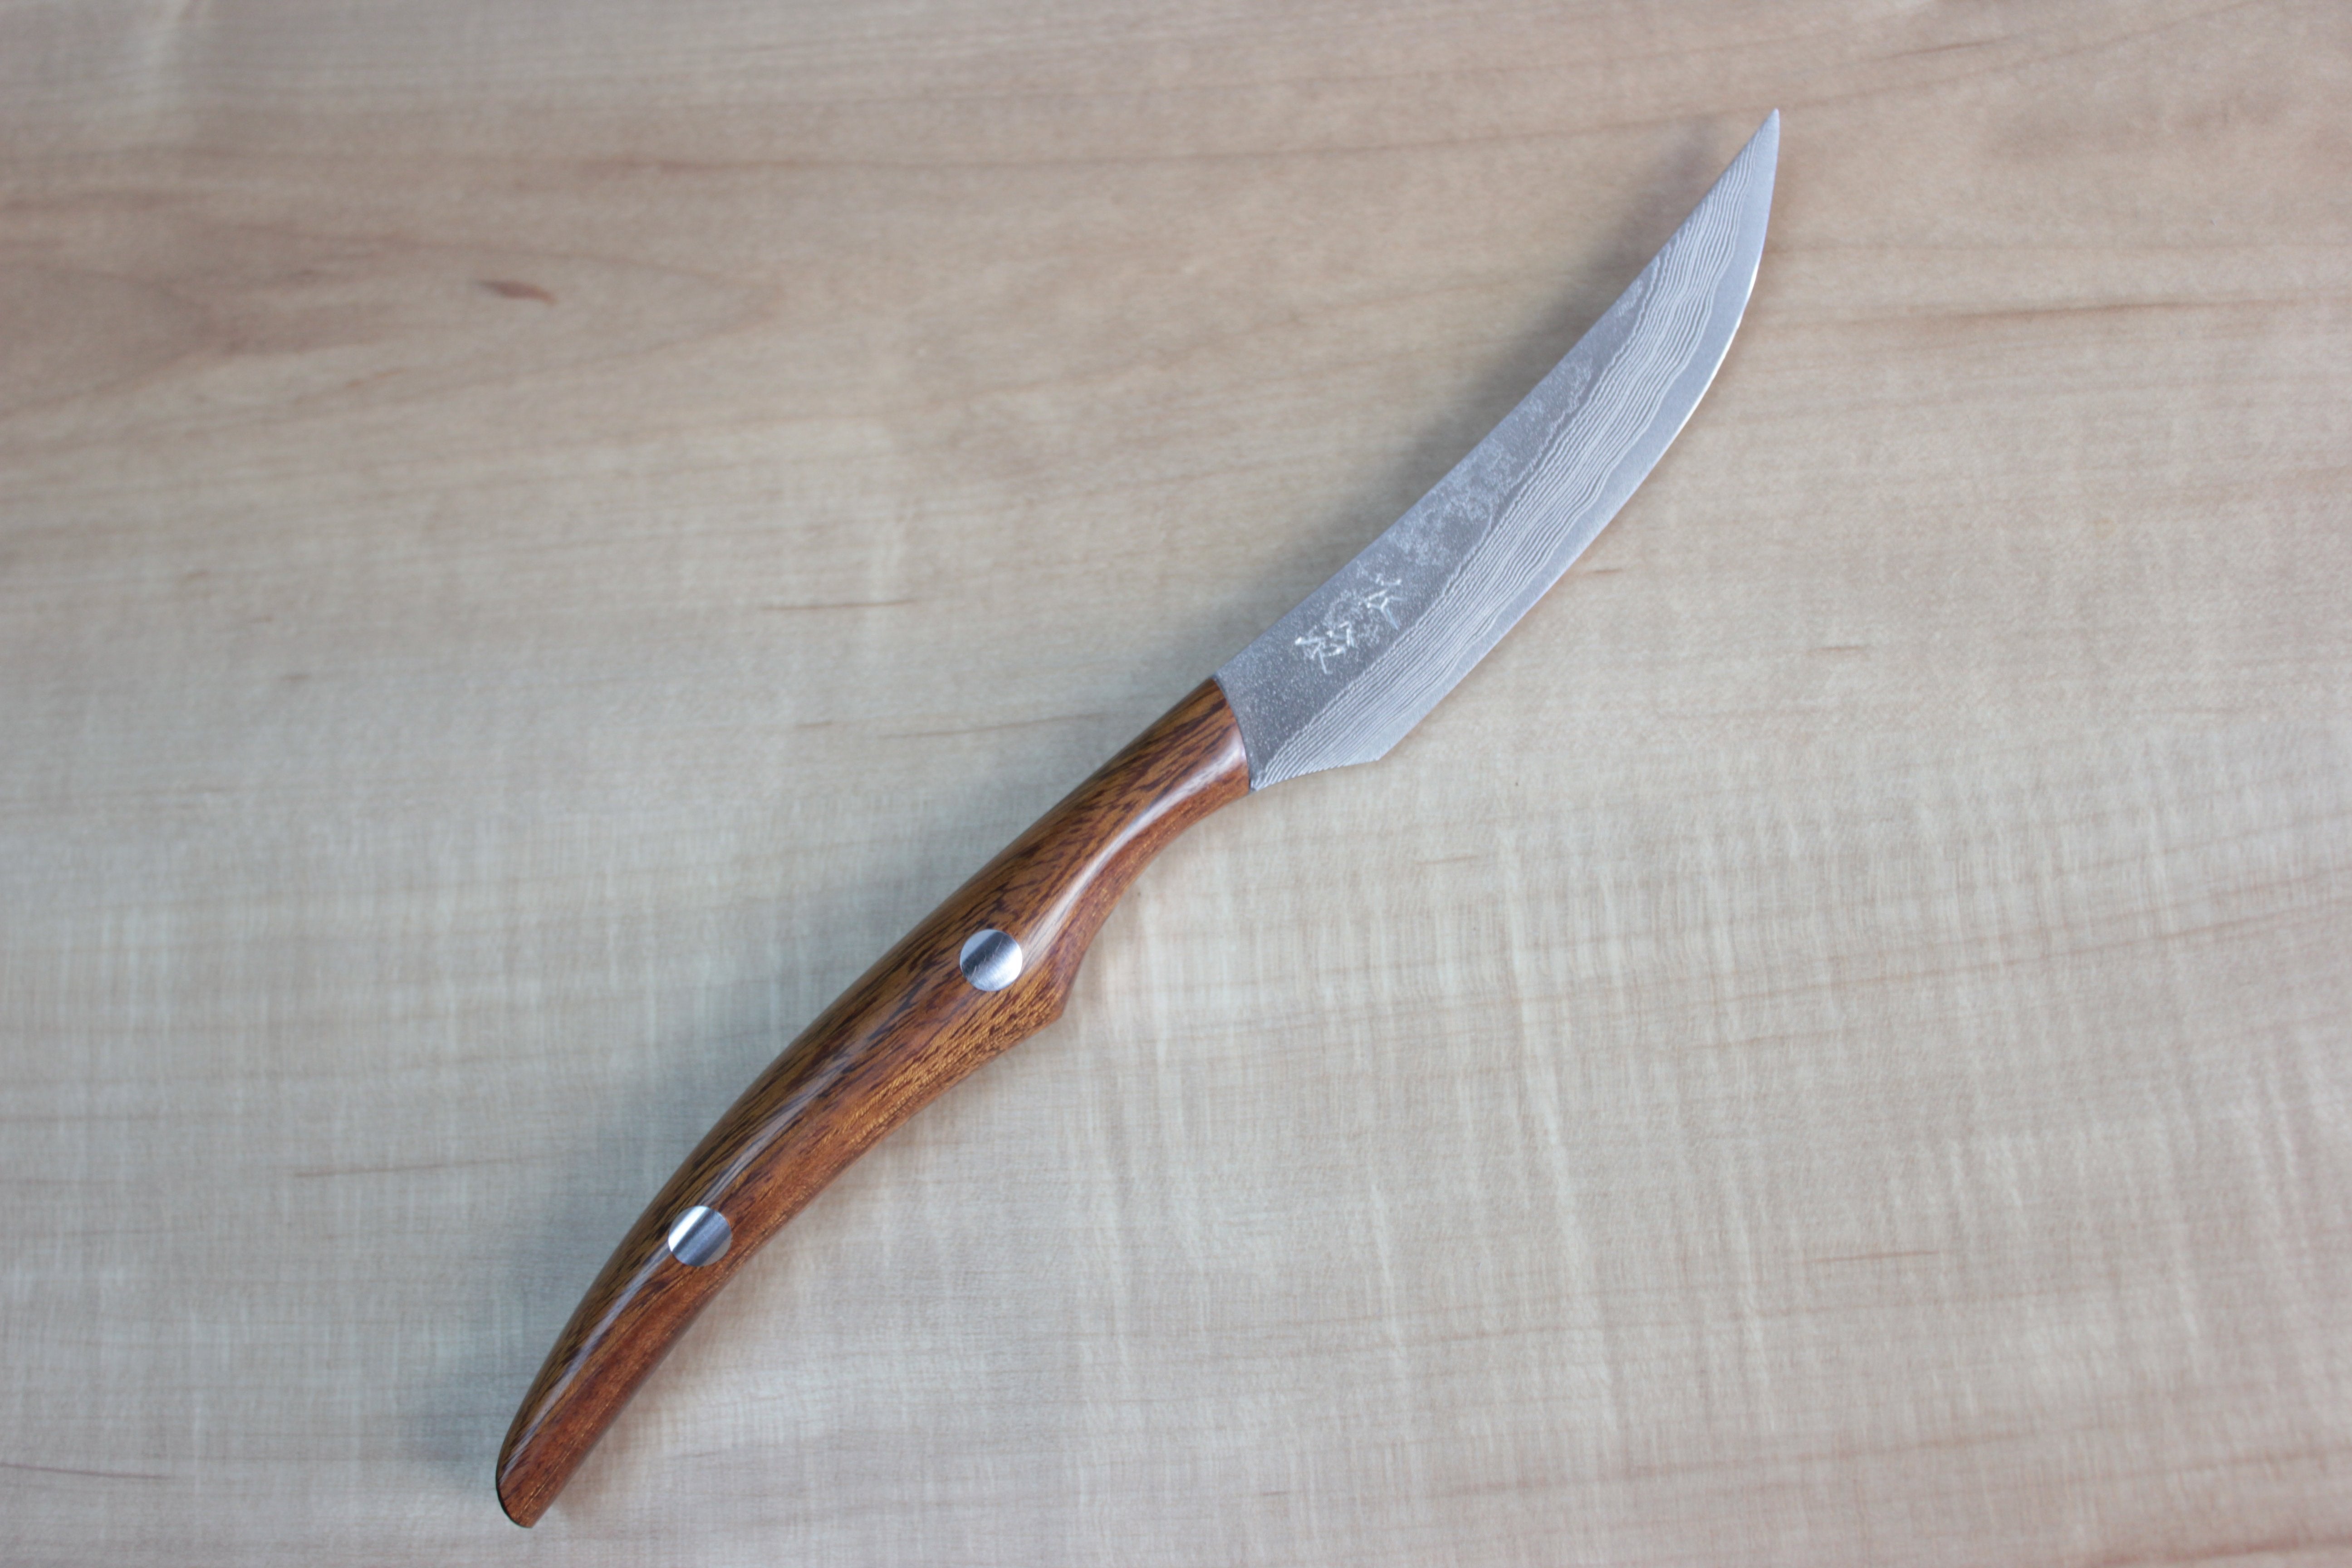 Steak Knife Set, Personalized Steak Knives, Wood Handle Flatware